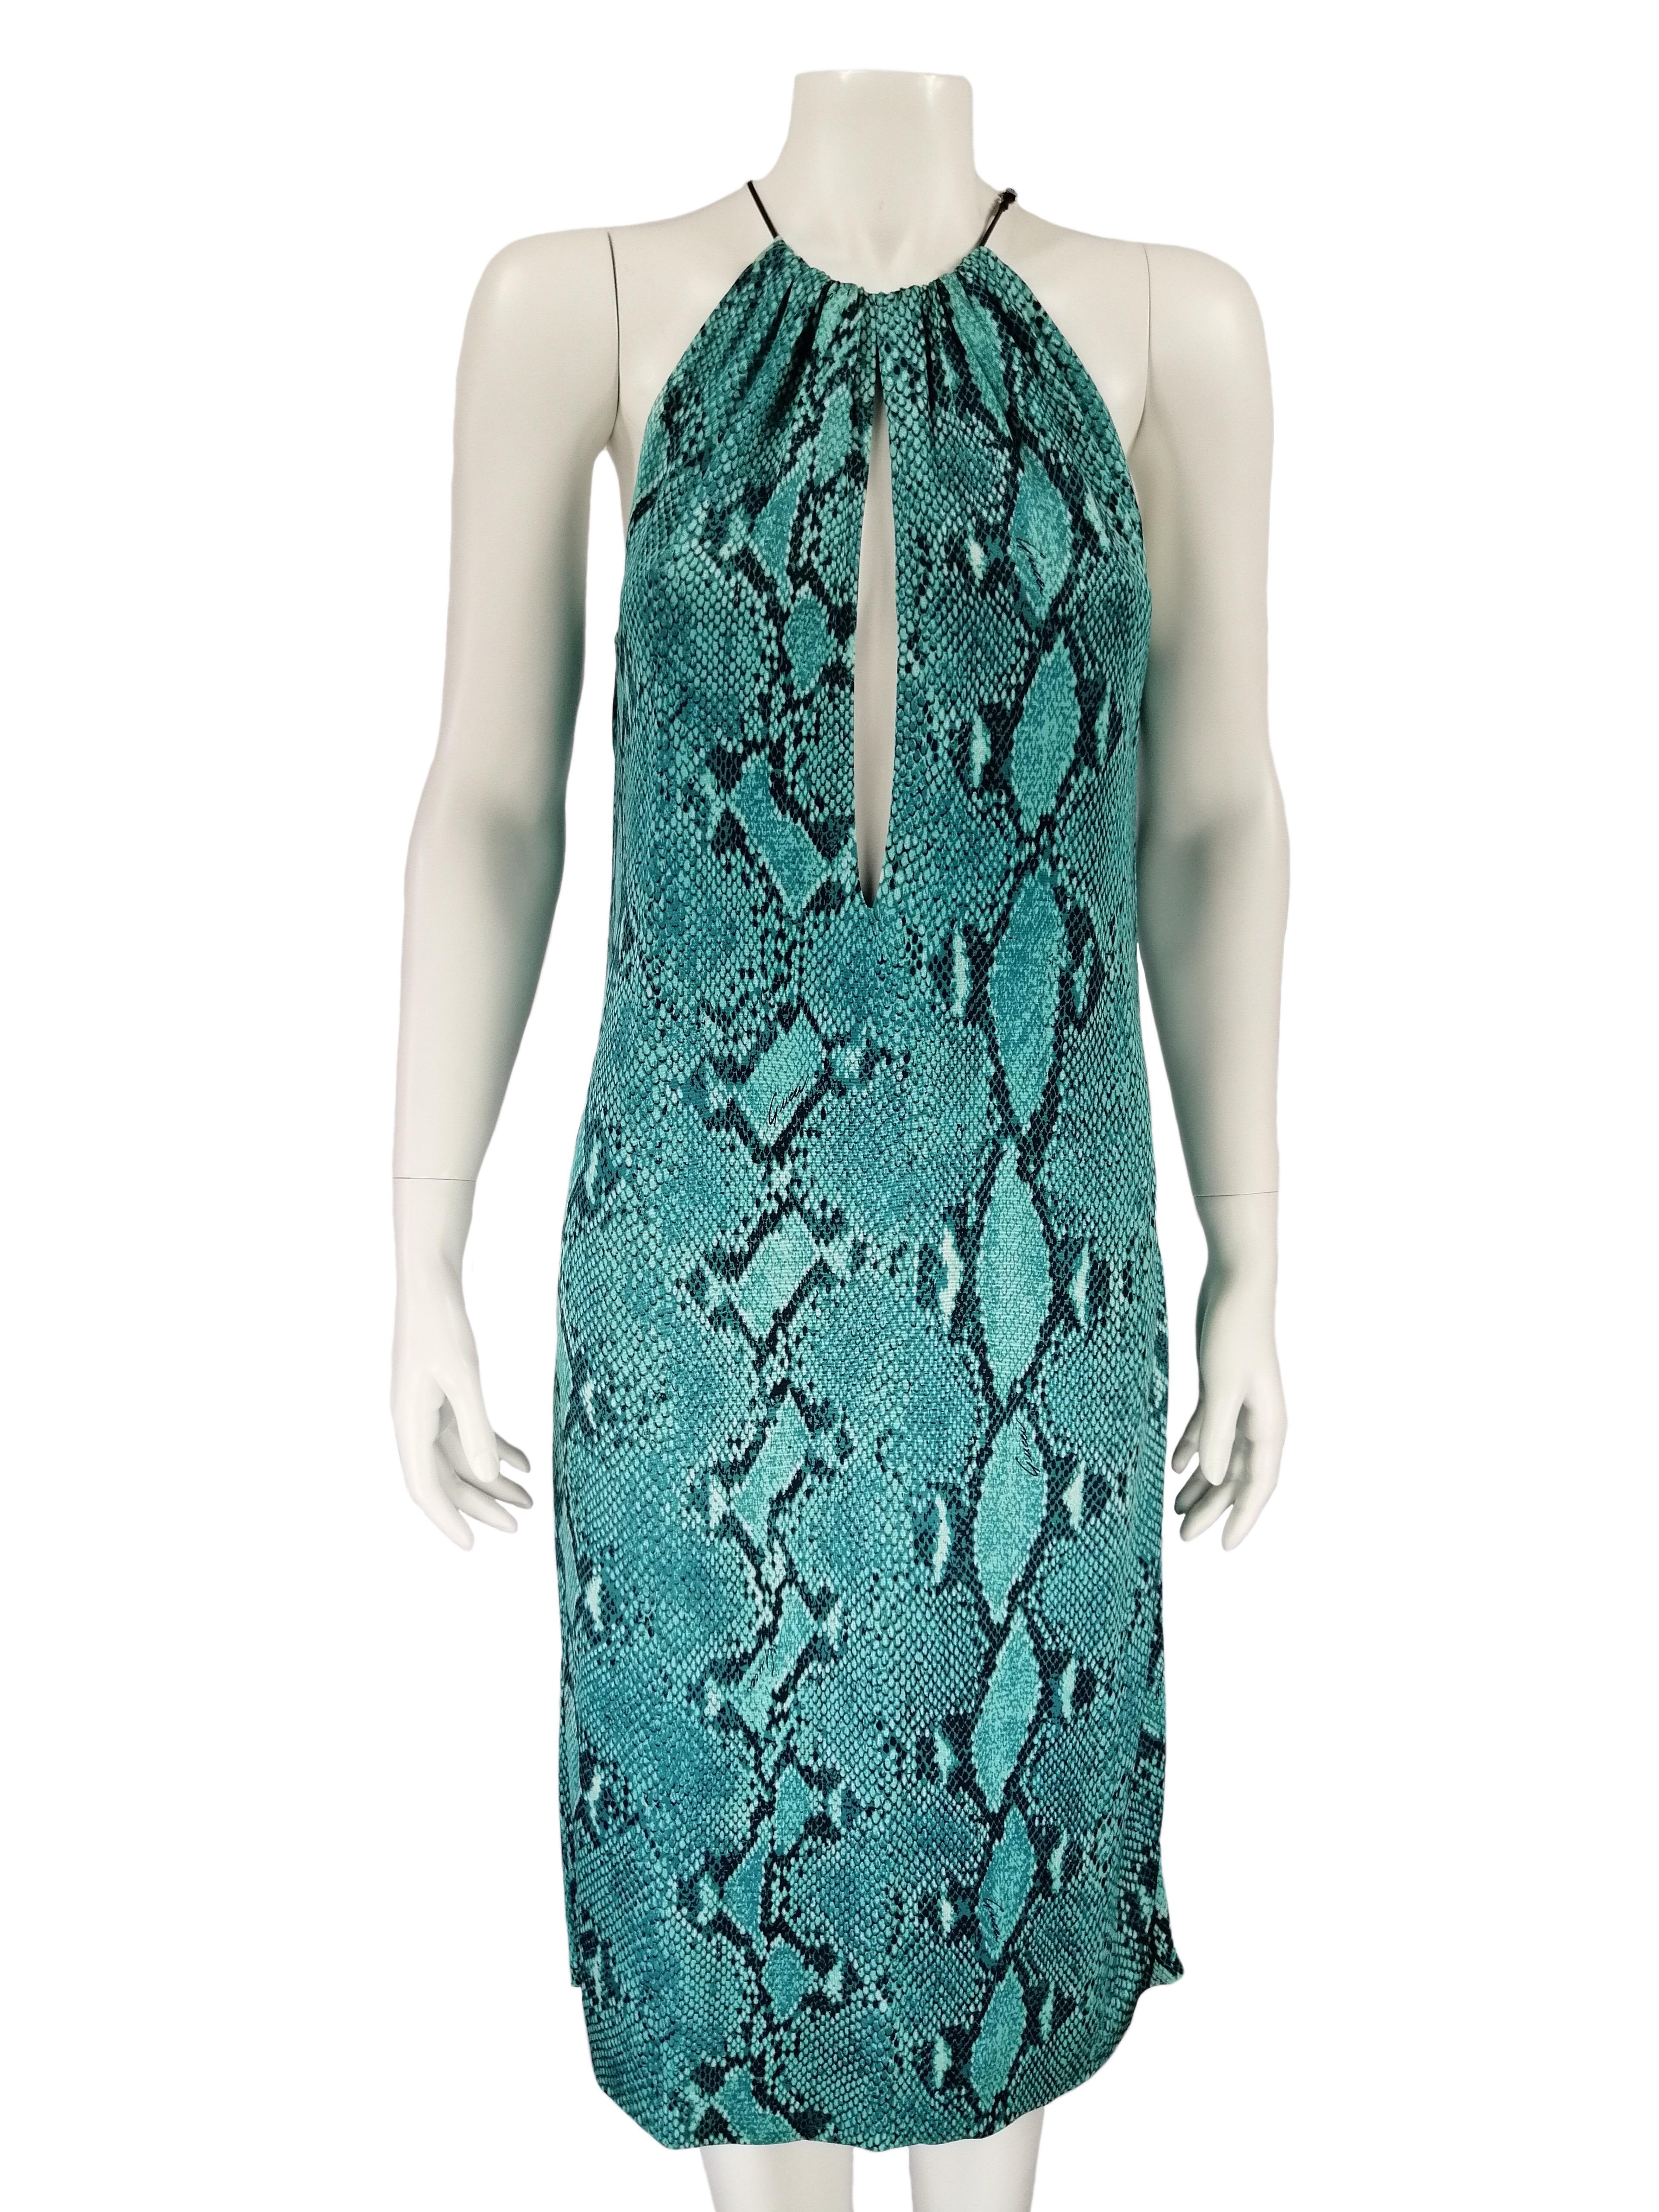 GUCCI
PERIOD: TOM FORD S/S 2000 Collection'S
Türkisfarbenes Kleid mit Pythonprint und Neckholder
Größe IT 44
Hergestellt in Italien
100% Viskose
Flache Maße:
Länge cm. 100
Oberweite cm. 44
Ausgezeichneter Zustand